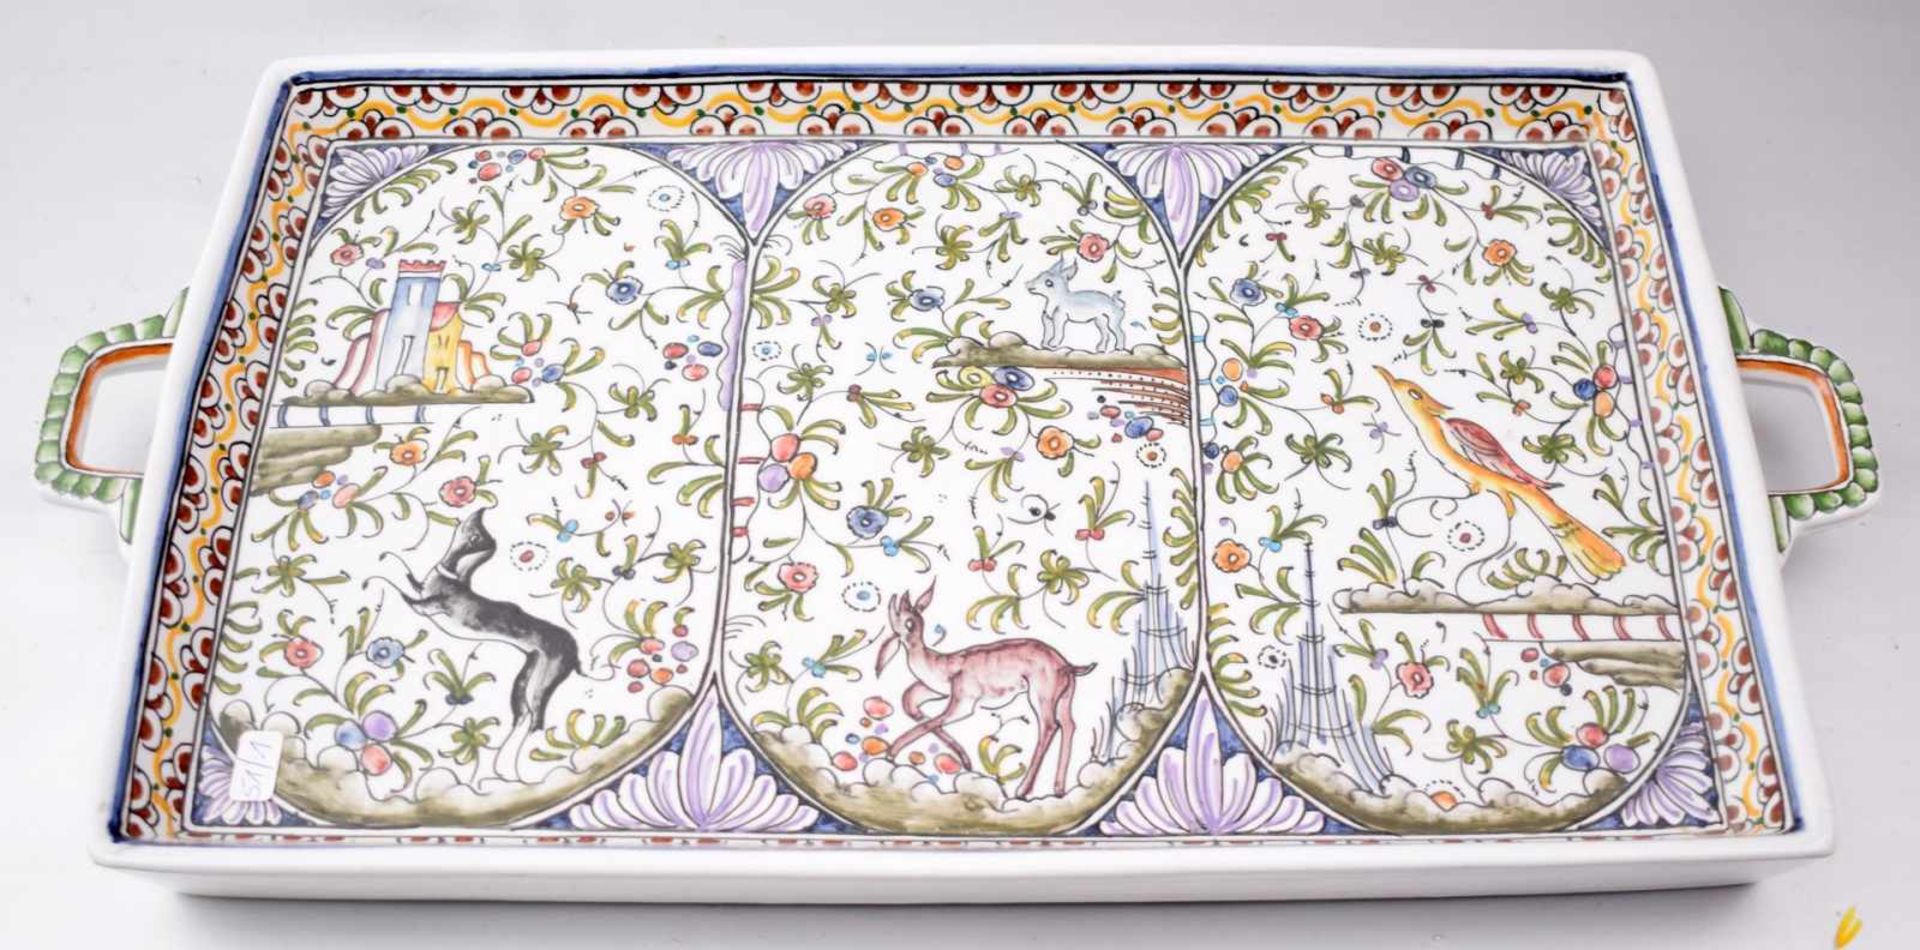 Platte beigefarben glasiert, Rand und Spiegel mit bunten Tier- und Blumenmotiven verziert, 46 X 24